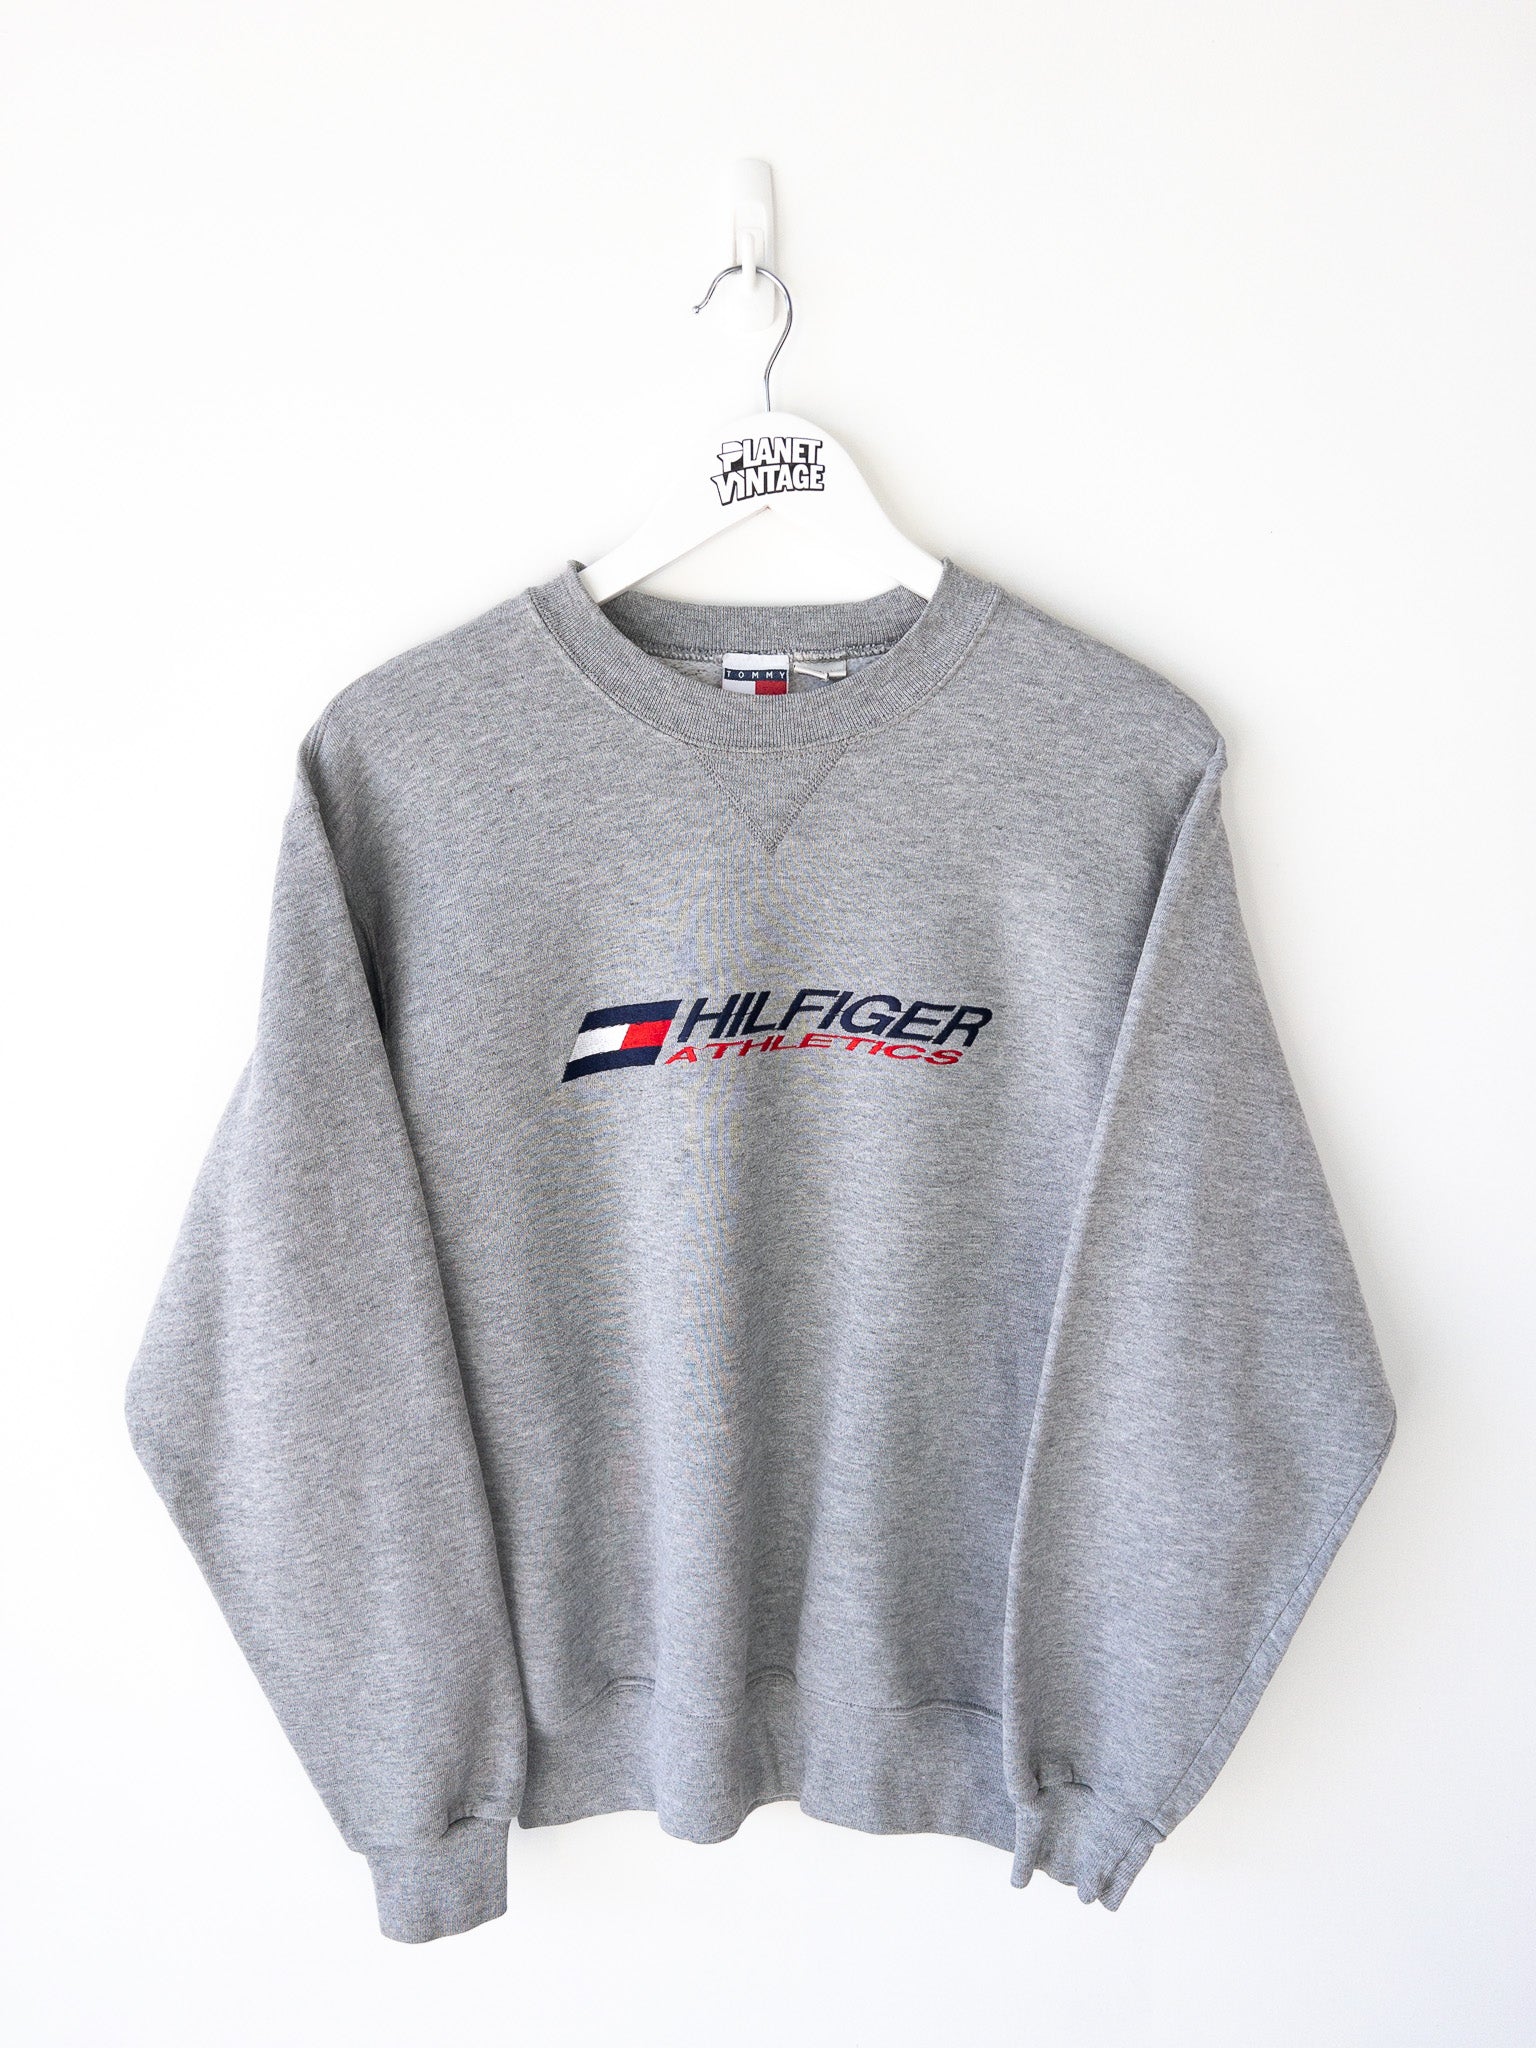 Vintage Tommy Hilfiger Athletics Sweatshirt (S)